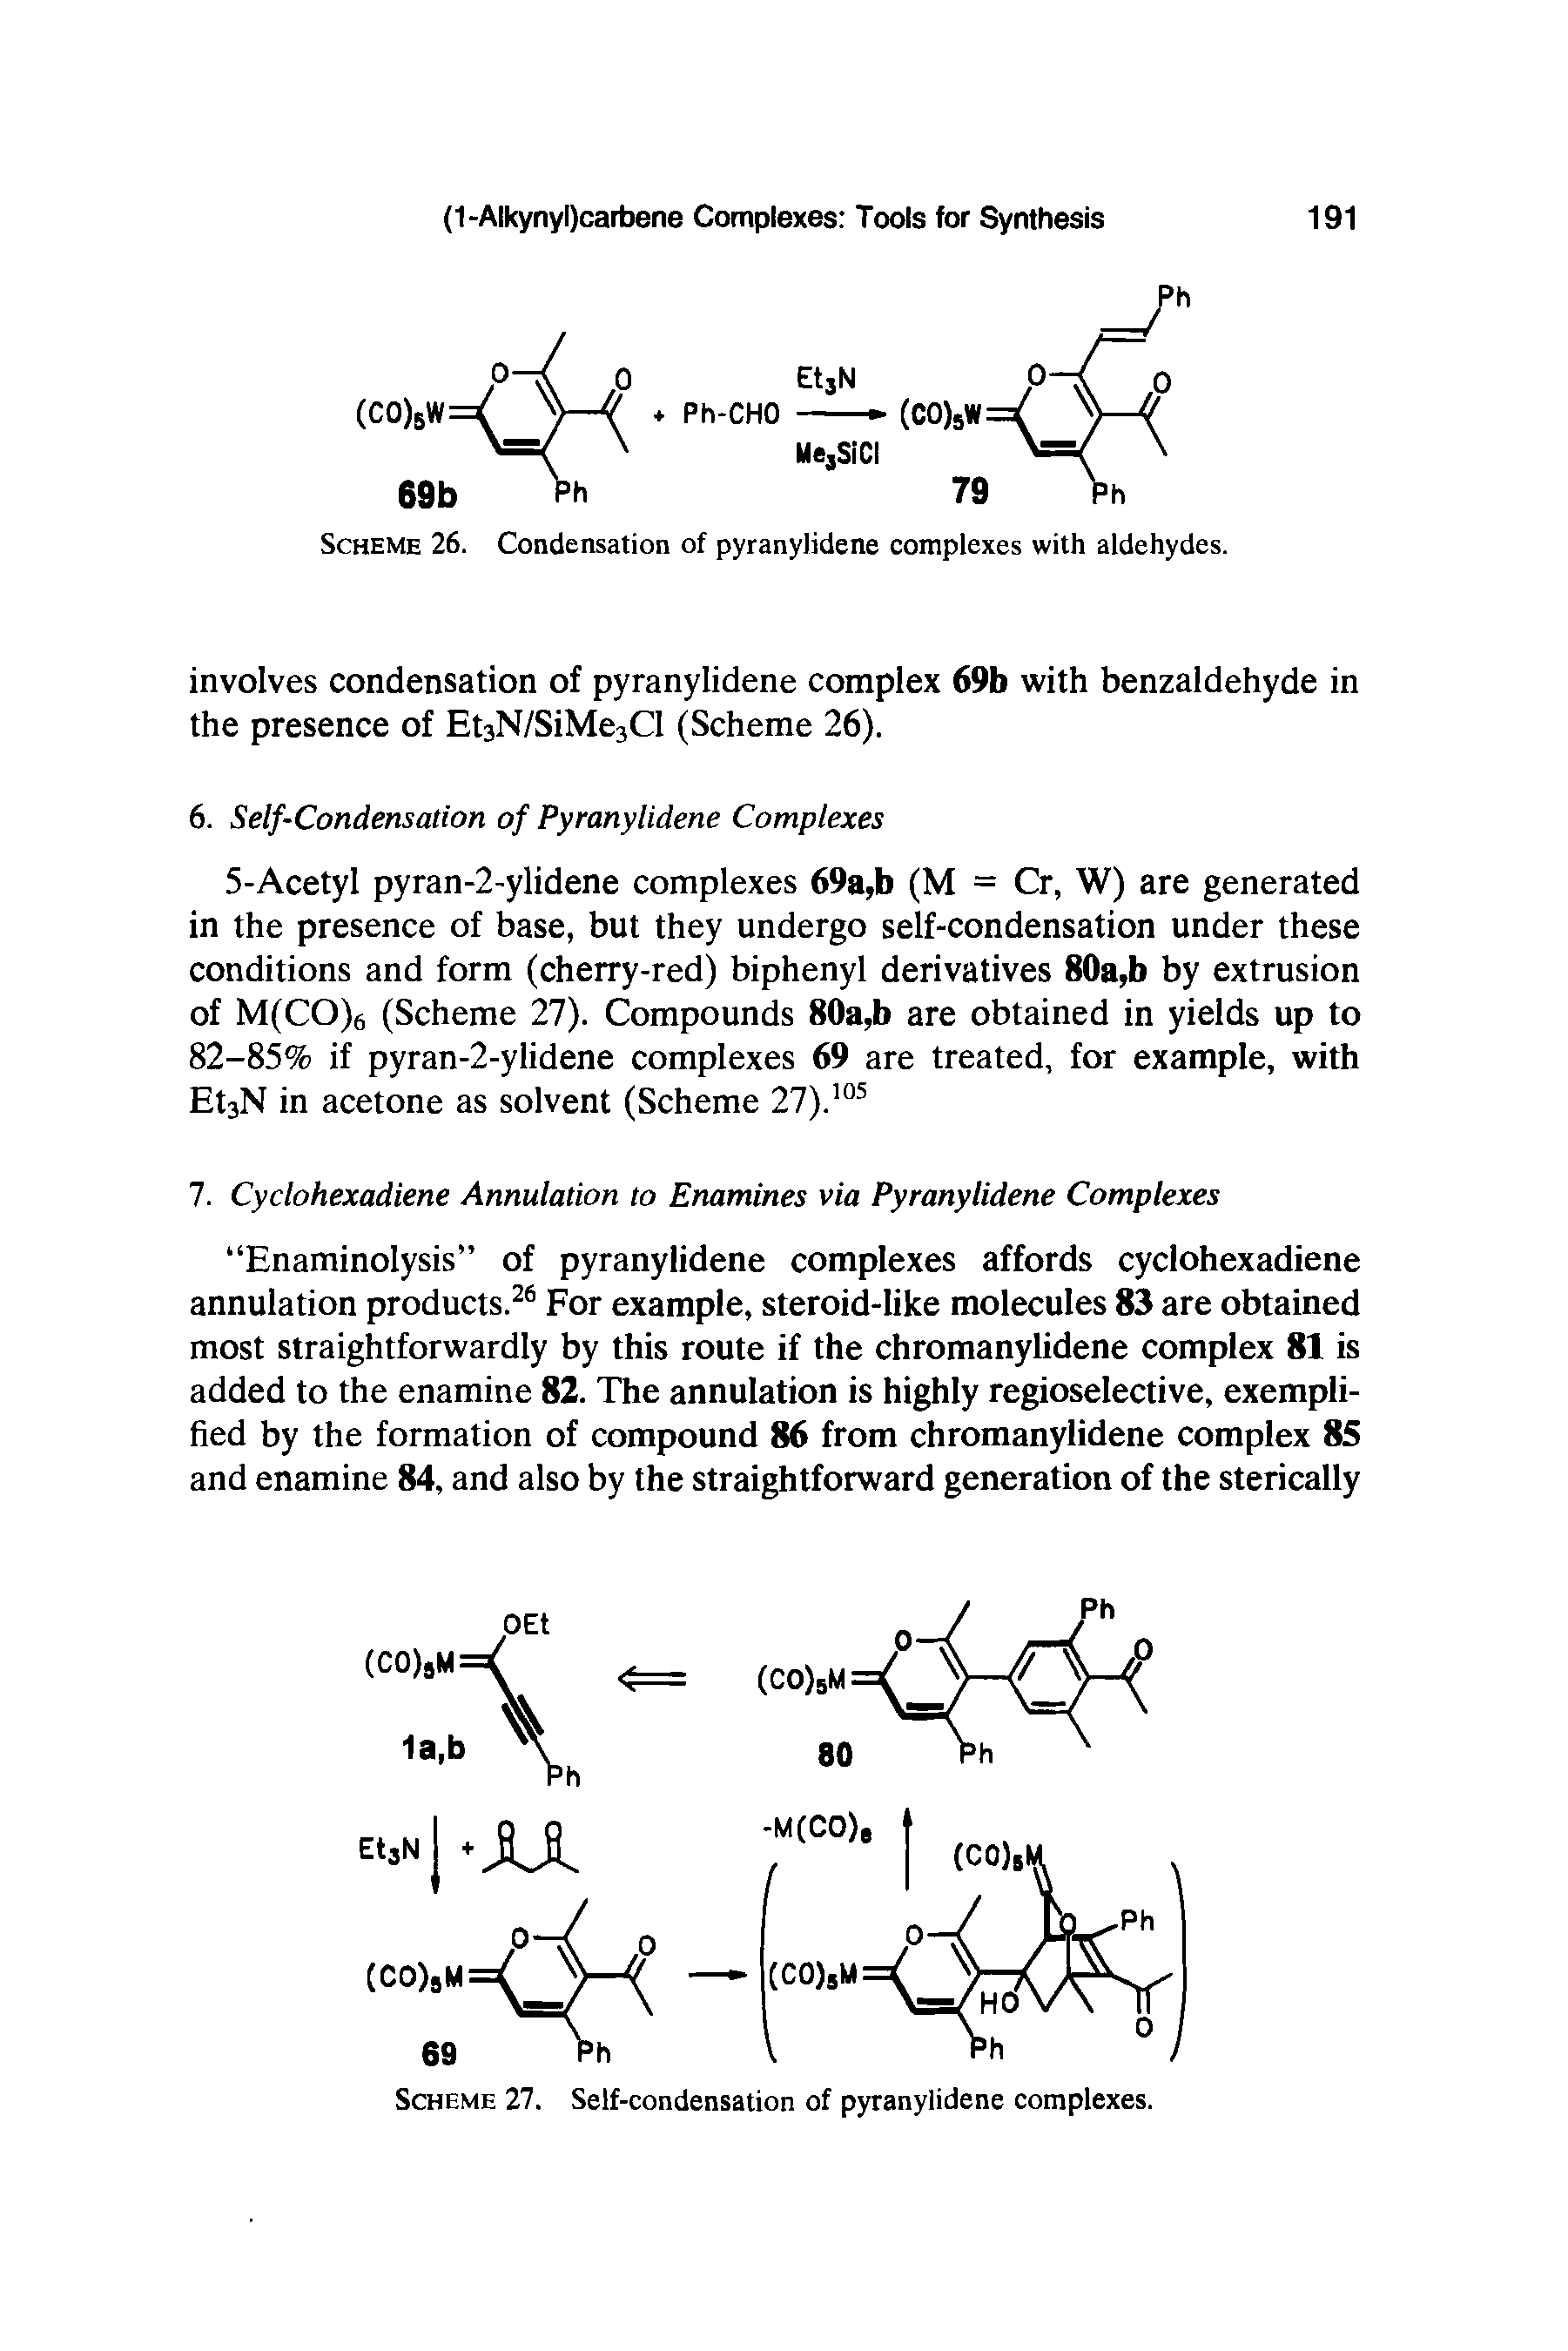 Scheme 26. Condensation of pyranylidene complexes with aldehydes.